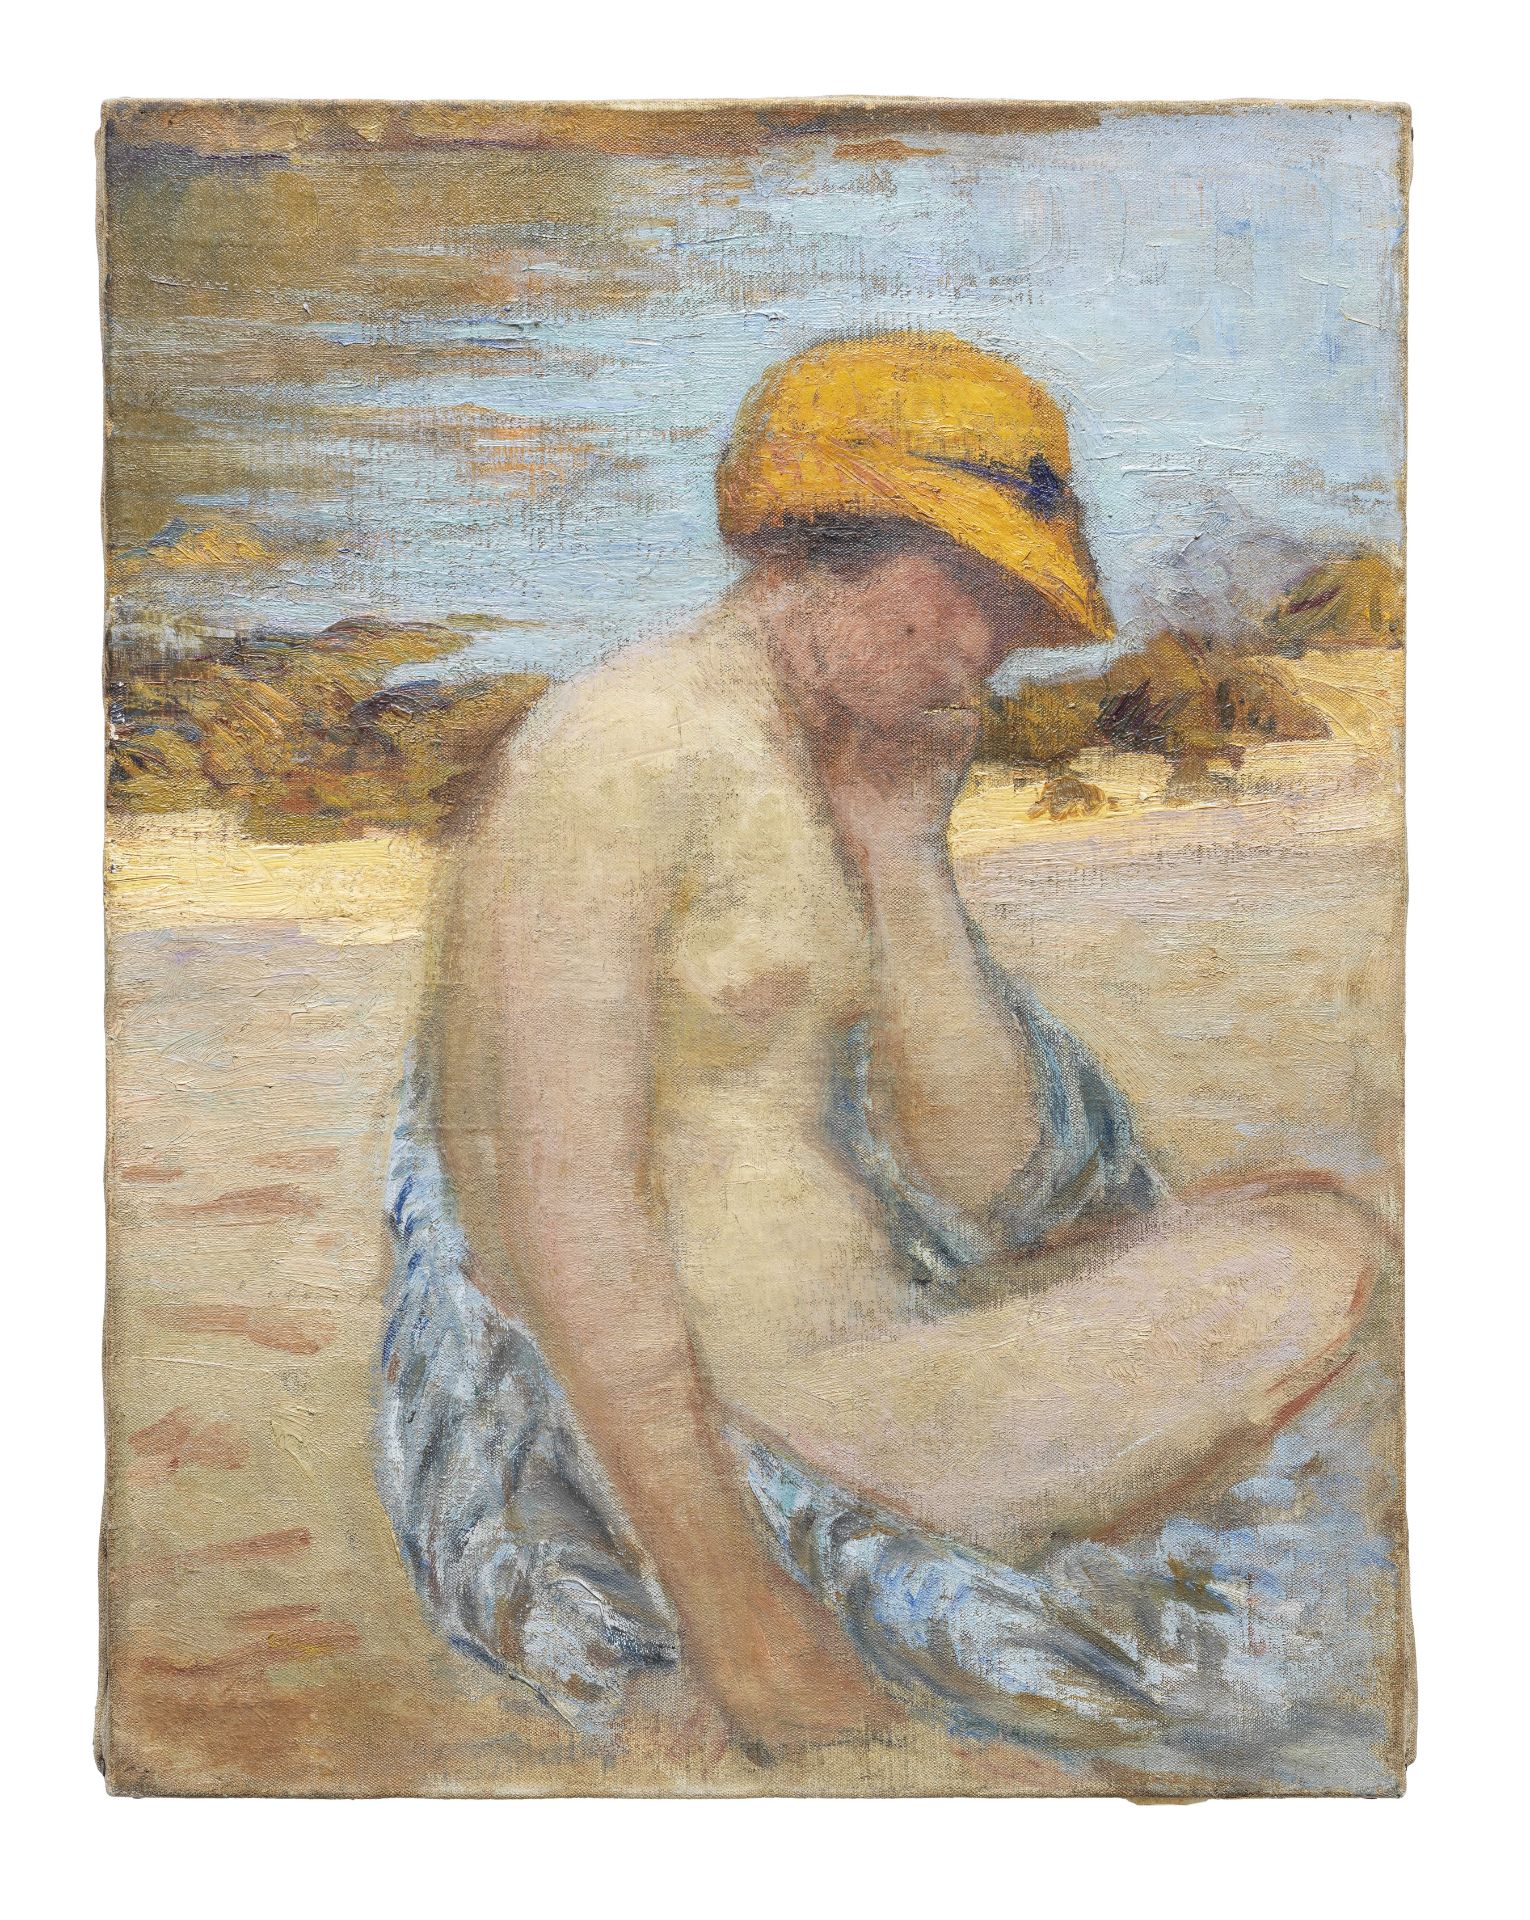 HENRI LEBASQUE (1865-1937) Femme avec une chapeau jaune, Étretat (Painted in Étretat in 1903)